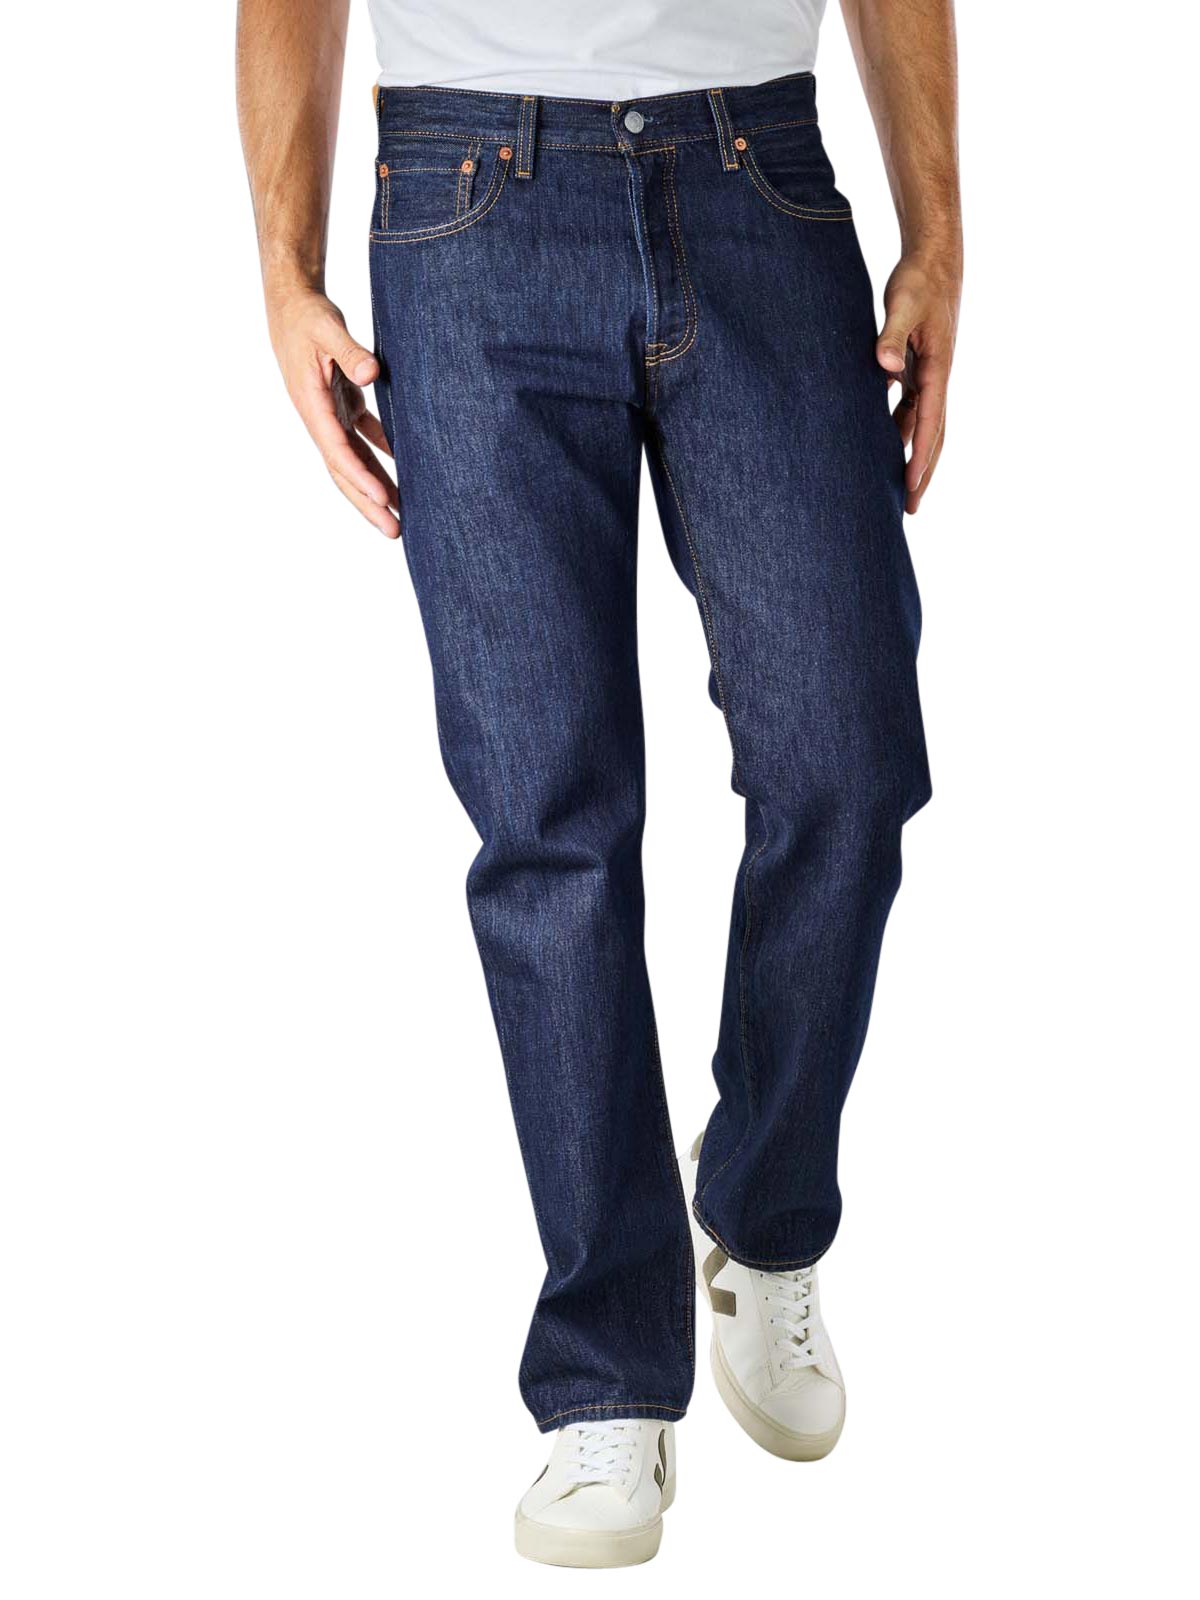 Levi's 501 Jeans rinse Levi's Jeans Homme | Livraison gratuite sur   - SIMPLY LOOK GOOD